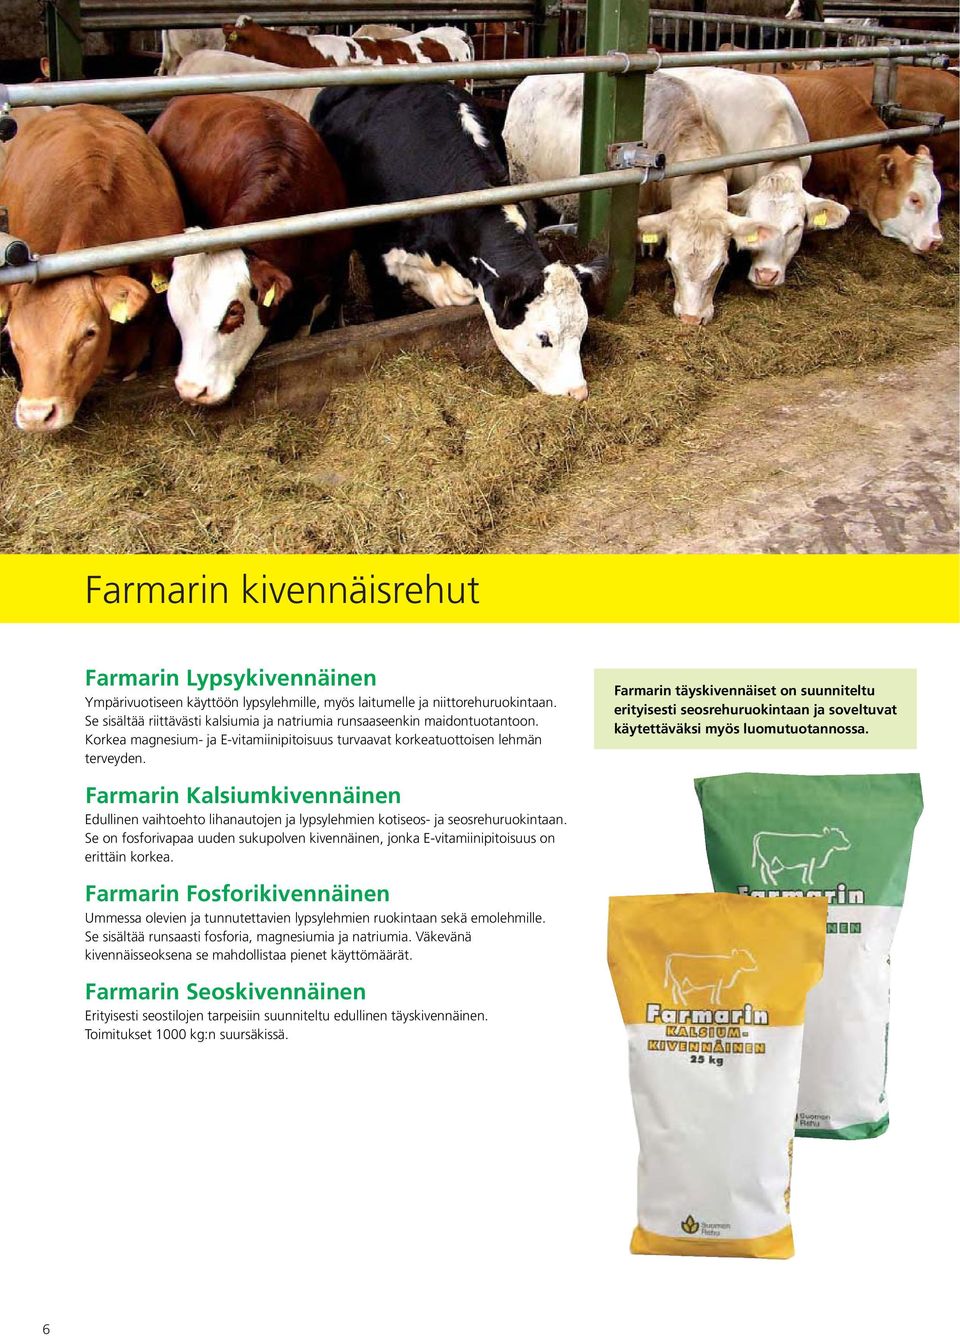 Farmarin täyskivennäiset on suunniteltu erityisesti seosrehuruokintaan ja soveltuvat käytettäväksi myös luomutuotannossa.